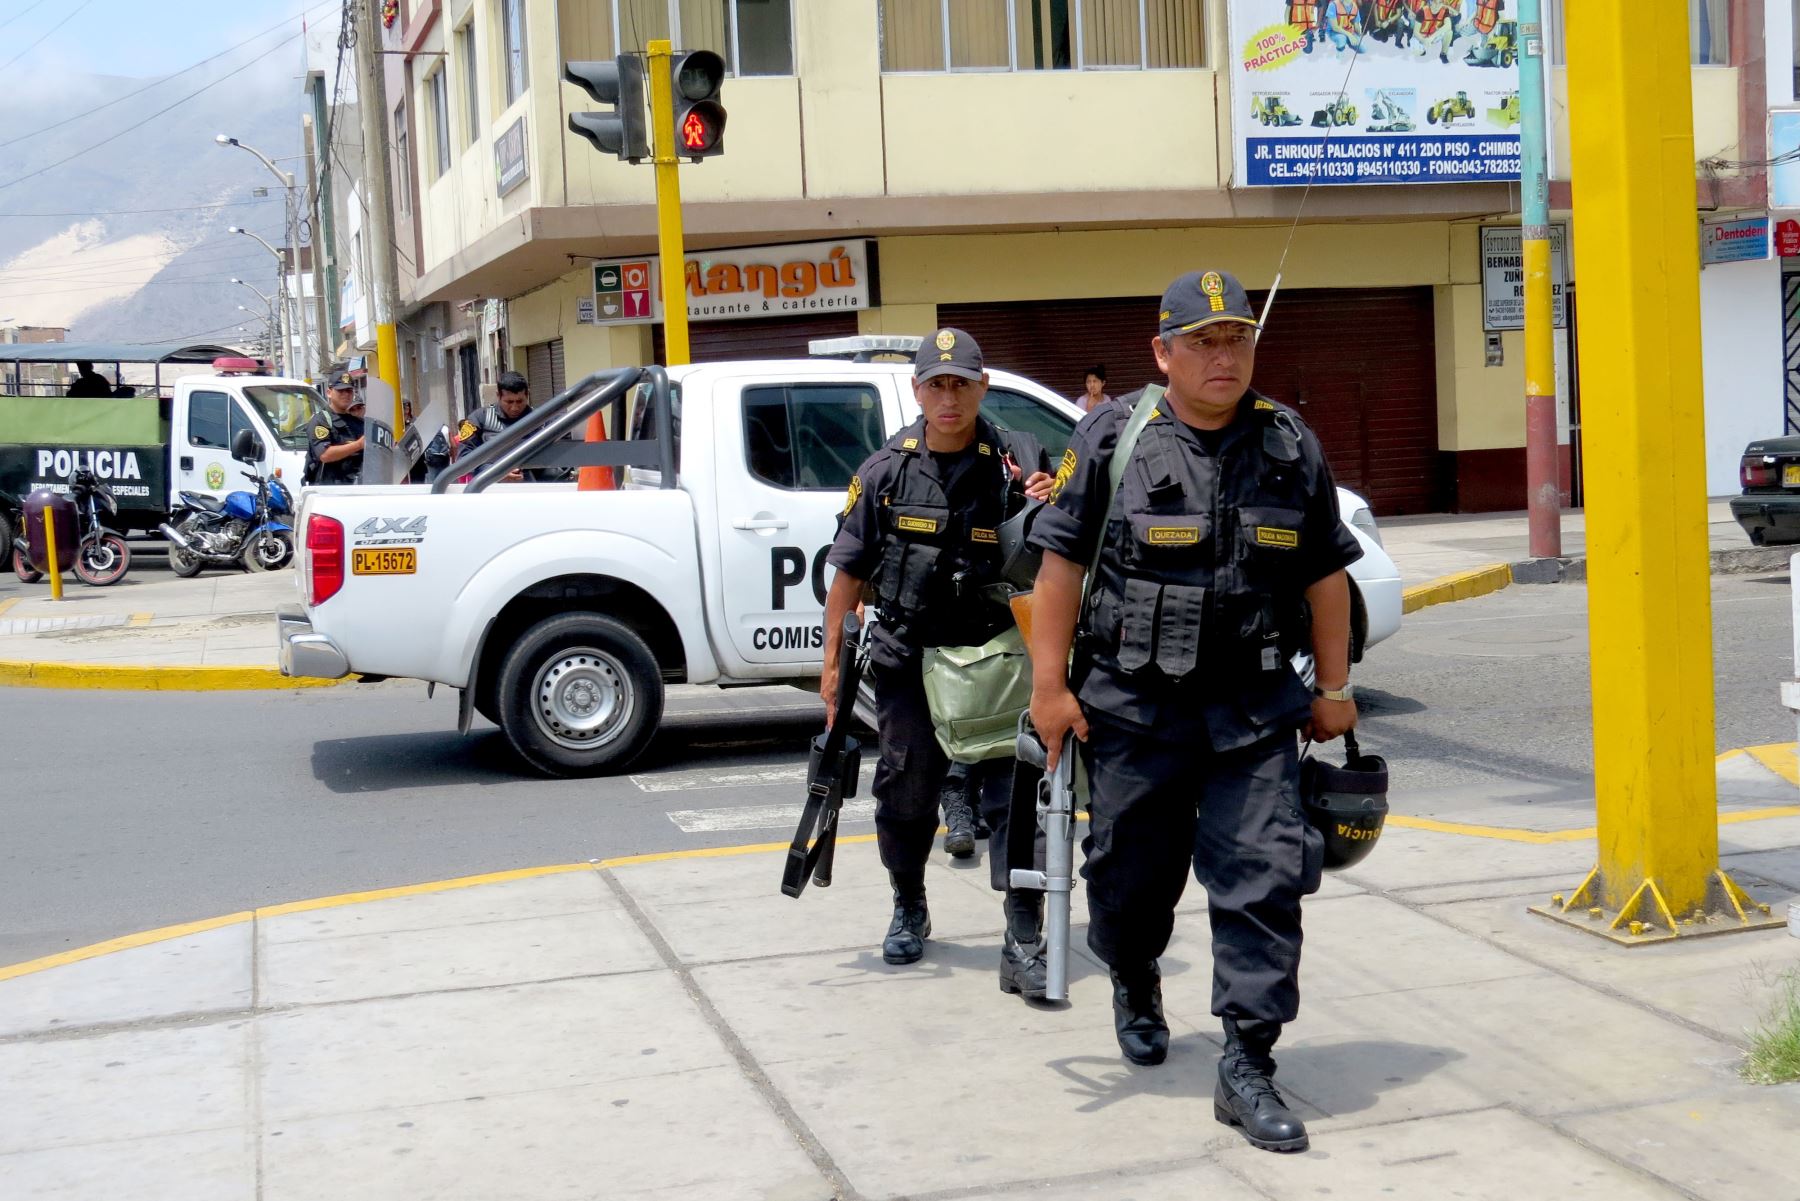 Policía movilizará 2,000 agentes en Chimbote por Semana Santa. ANDINA